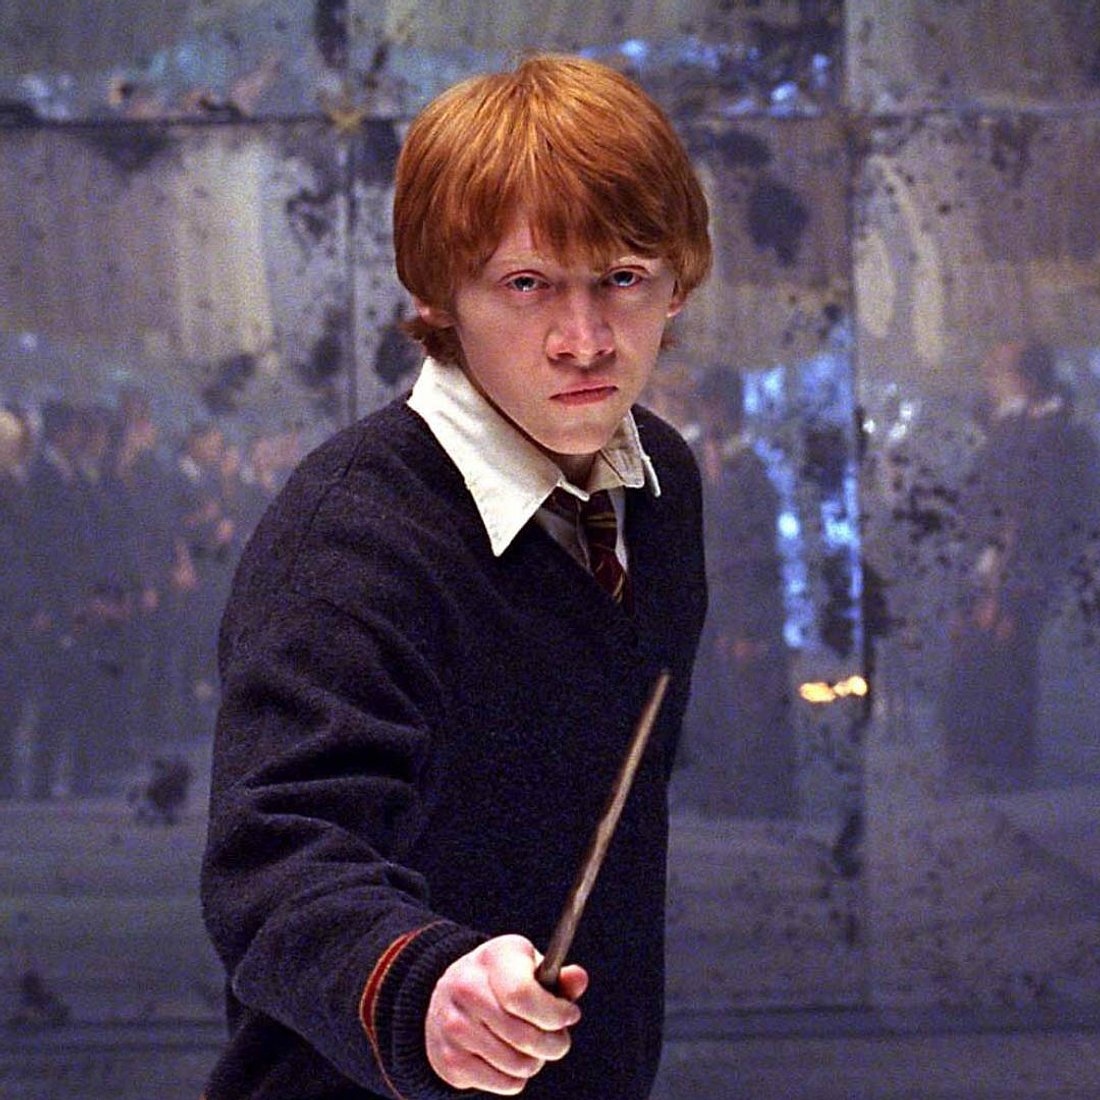 Harry Potter geheime Geschichten: Ron Weasley sollte sterben!